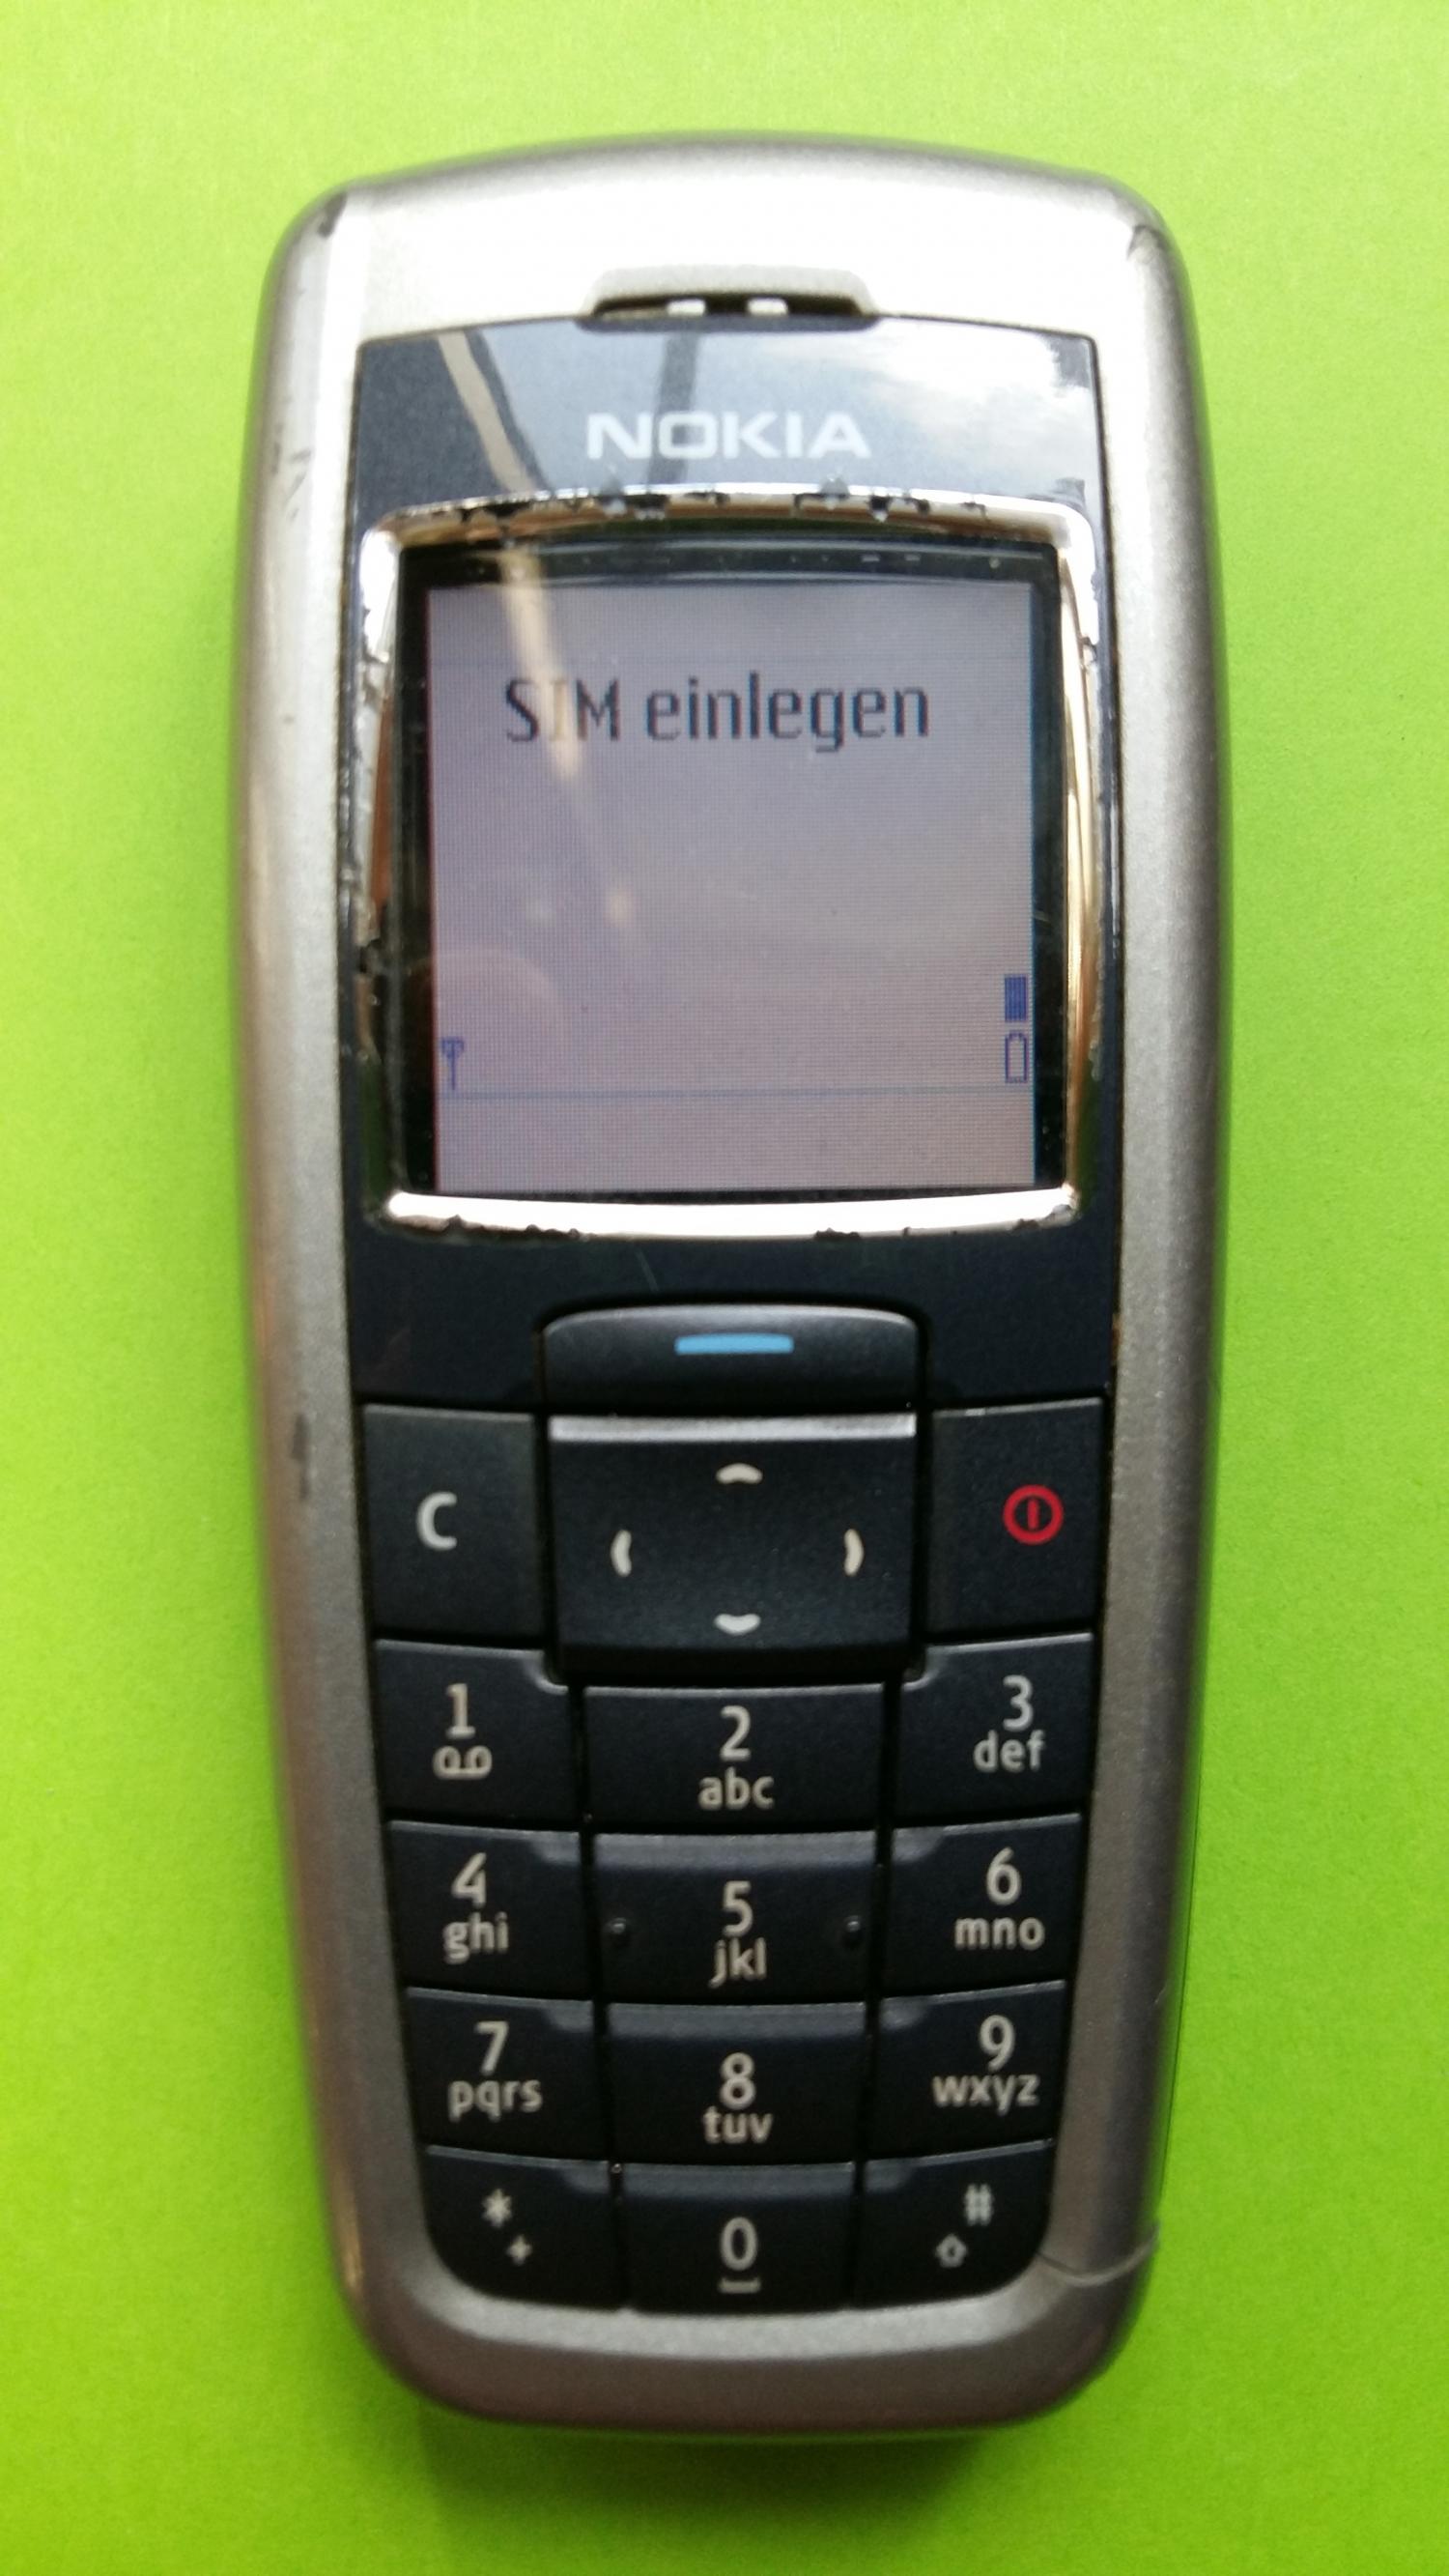 image-7330050-Nokia 2600 (6)1.jpg